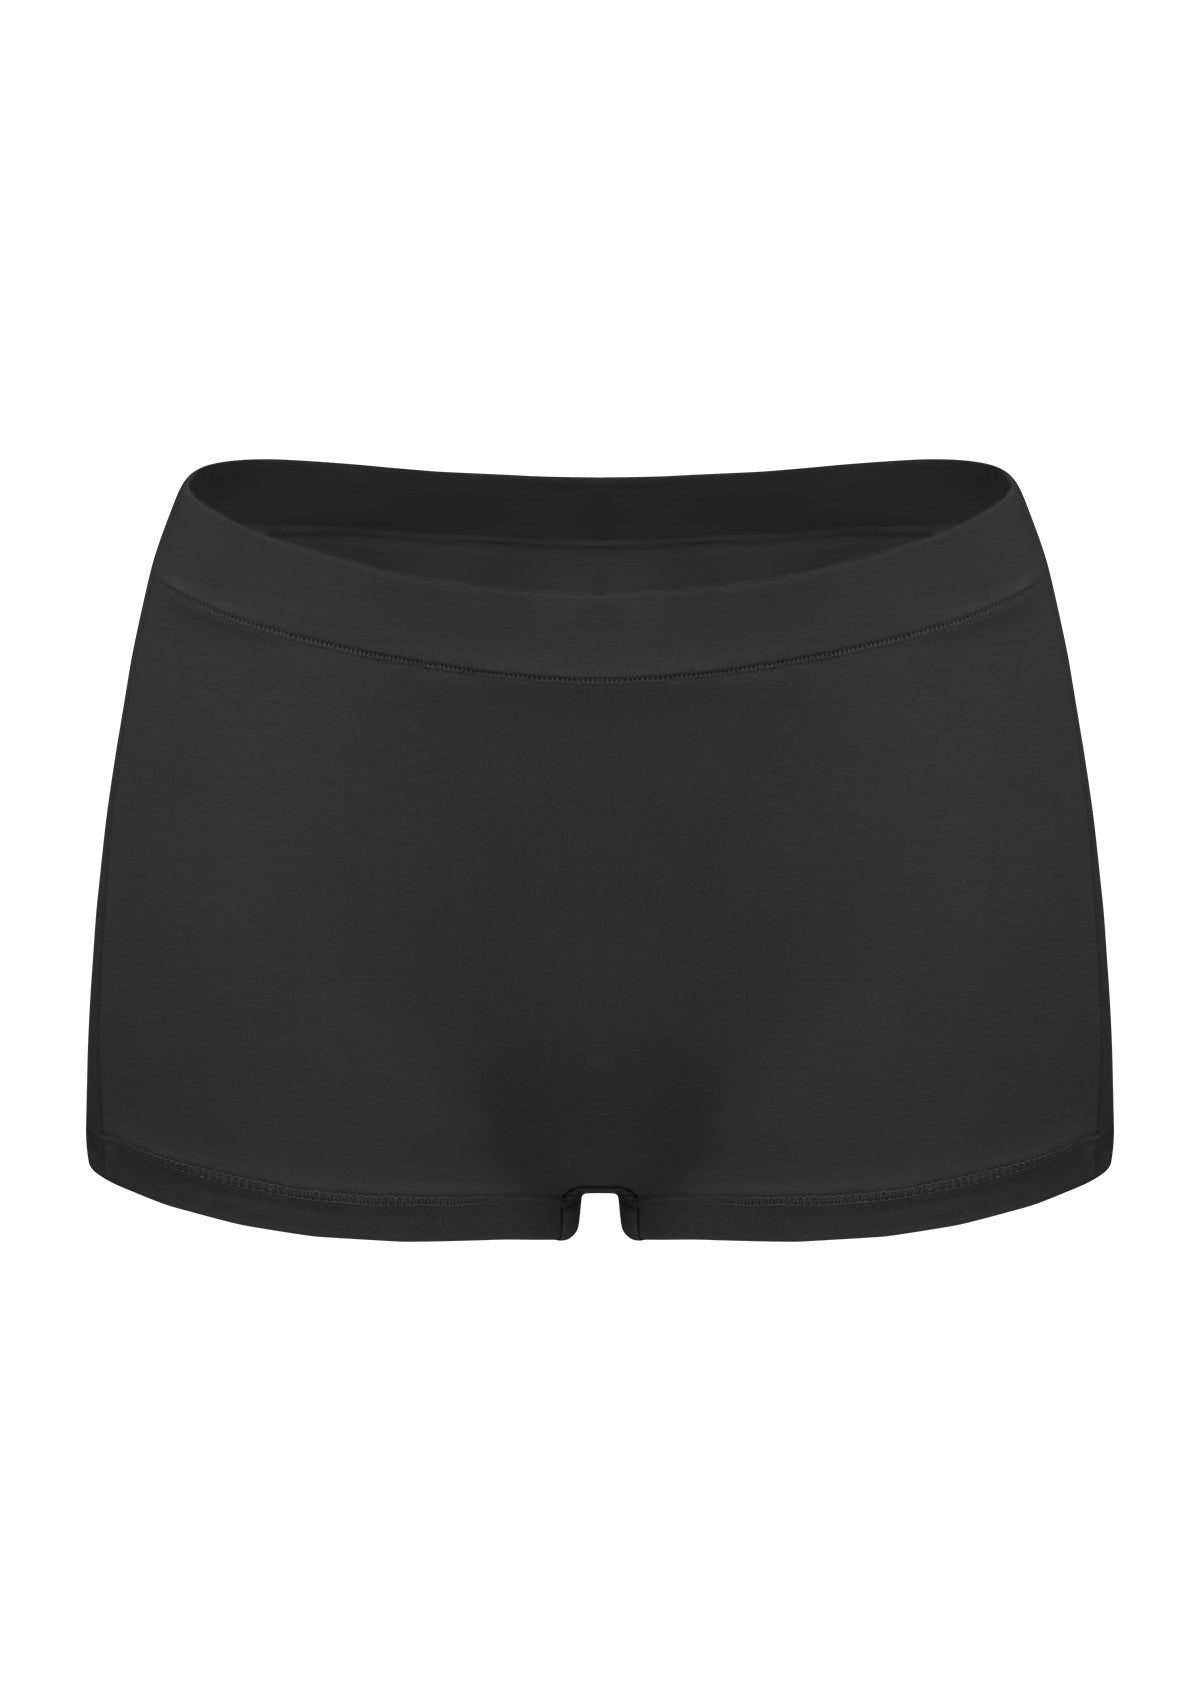 All-Day Comfort Mid-Rise Cotton Boyshorts Underwear 3 Pack - XL / Black+White+Beige